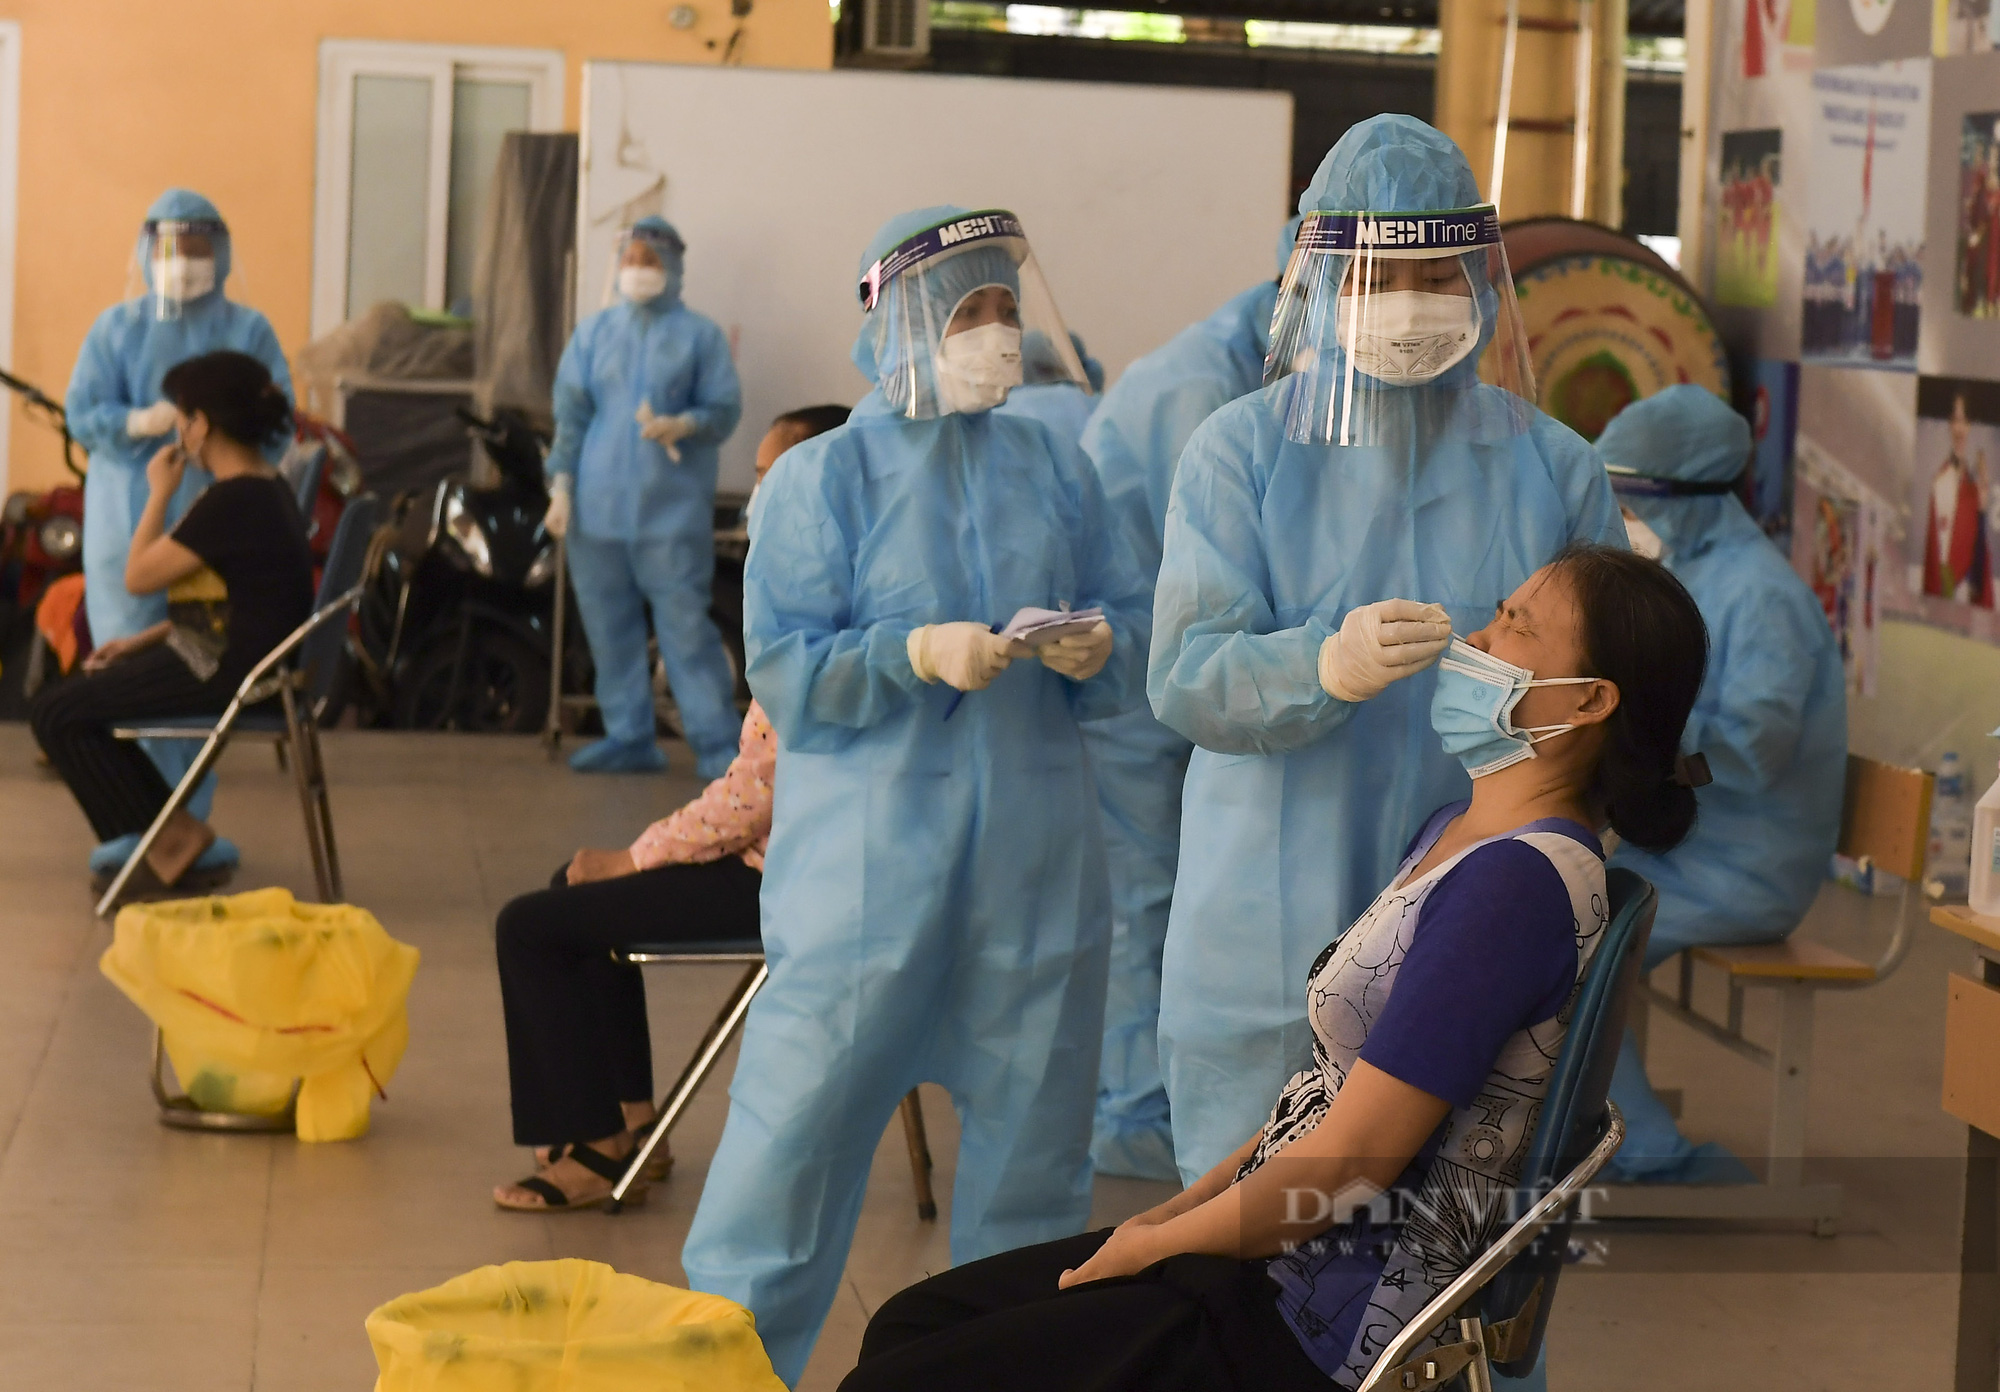 Hà Nội: Thần tốc xét nghiệm Covid-19 cho hàng nghìn người dân gần Bệnh viện Phổi Hà Nội - Ảnh 1.